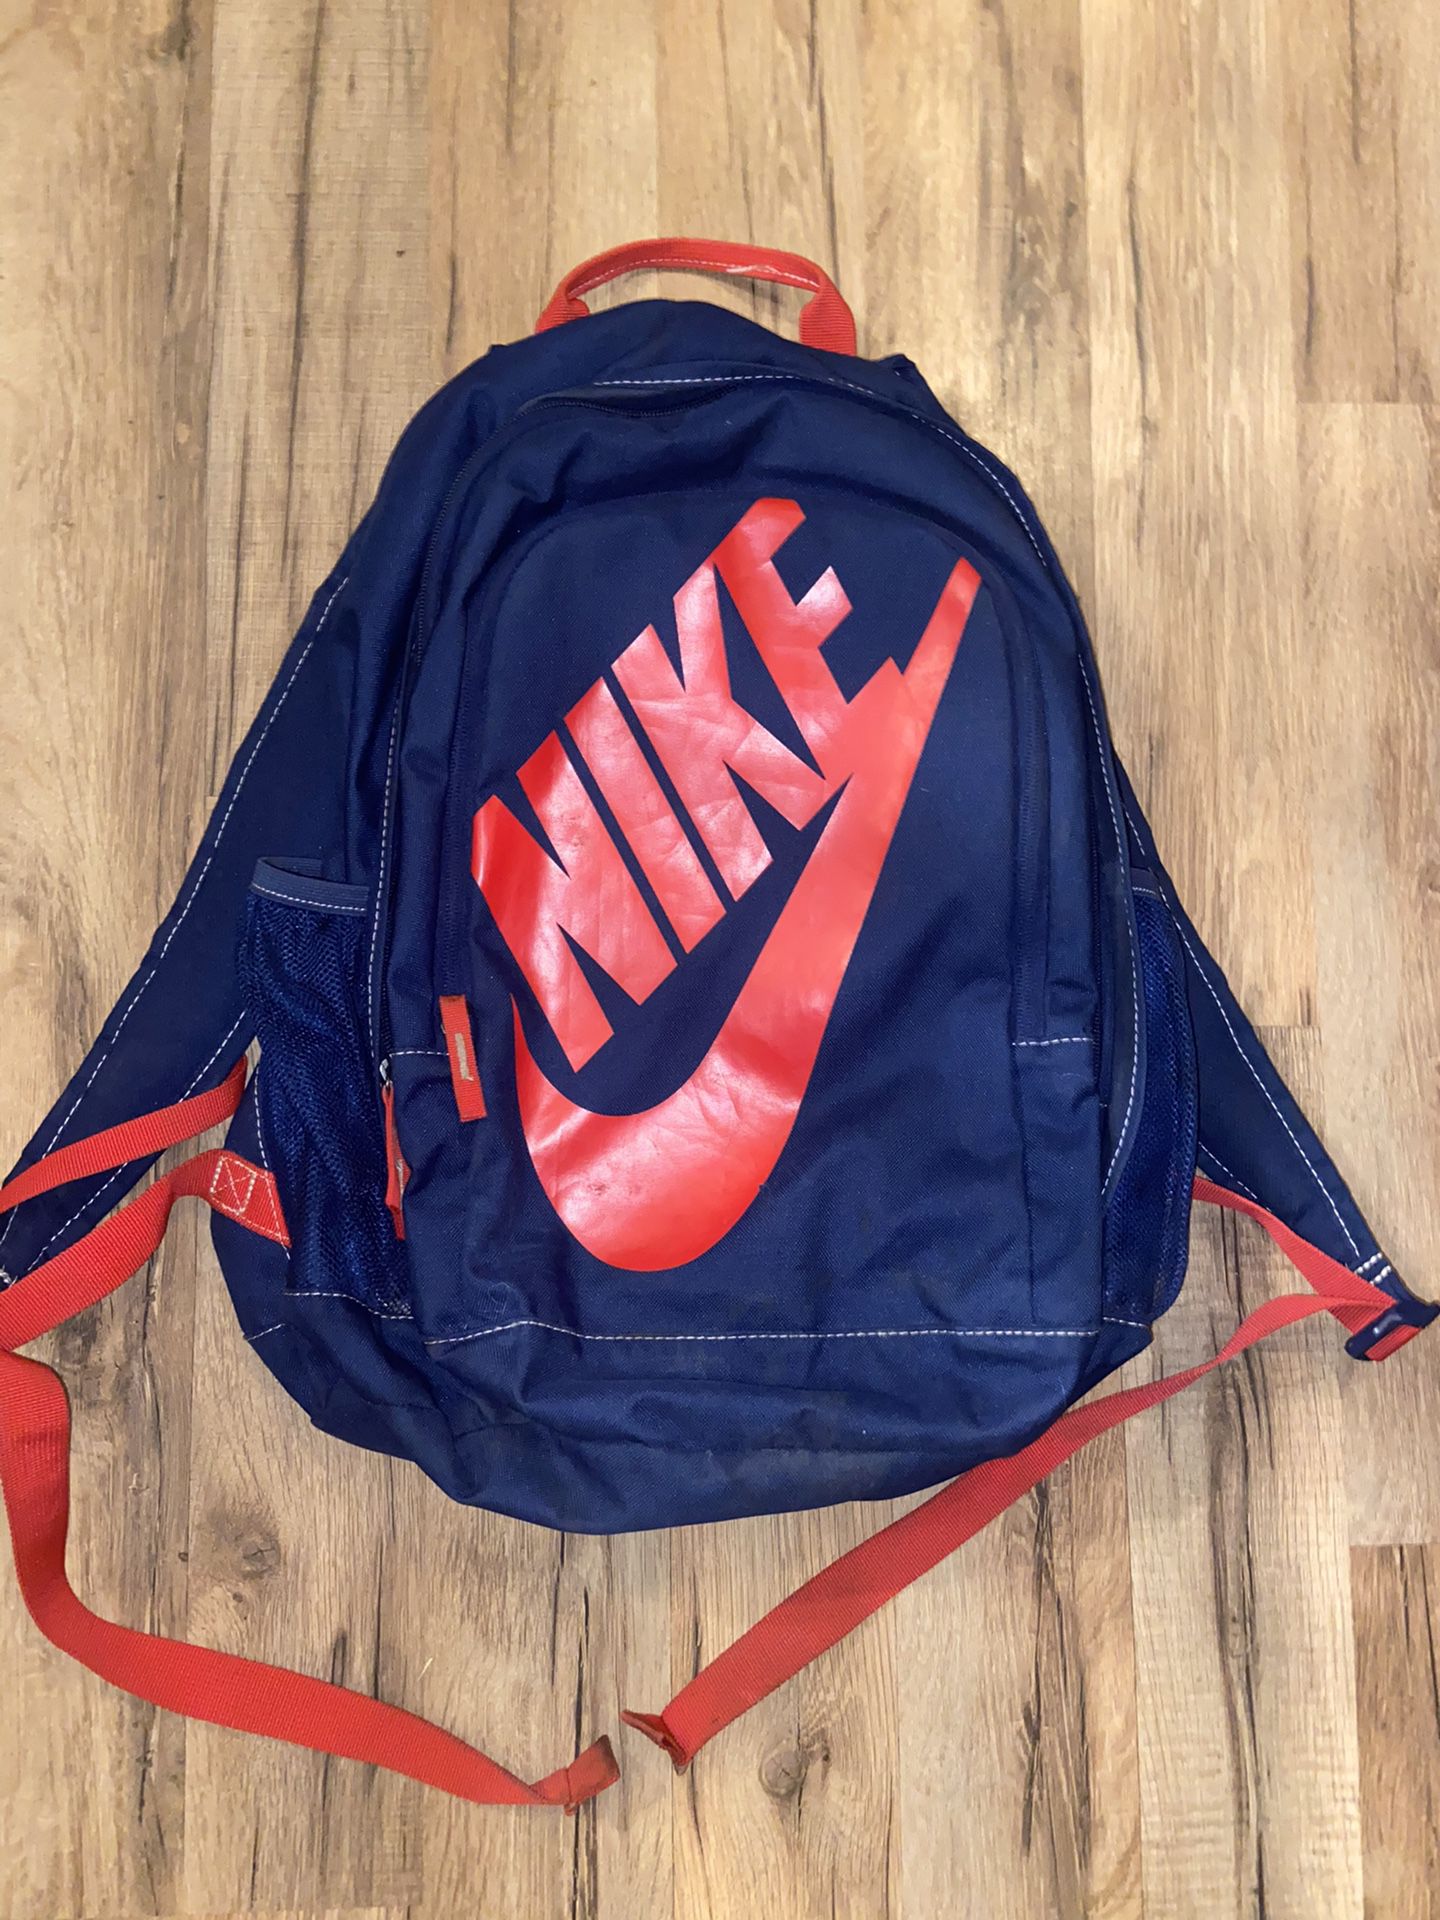 Nike Bookbag / Backpack 